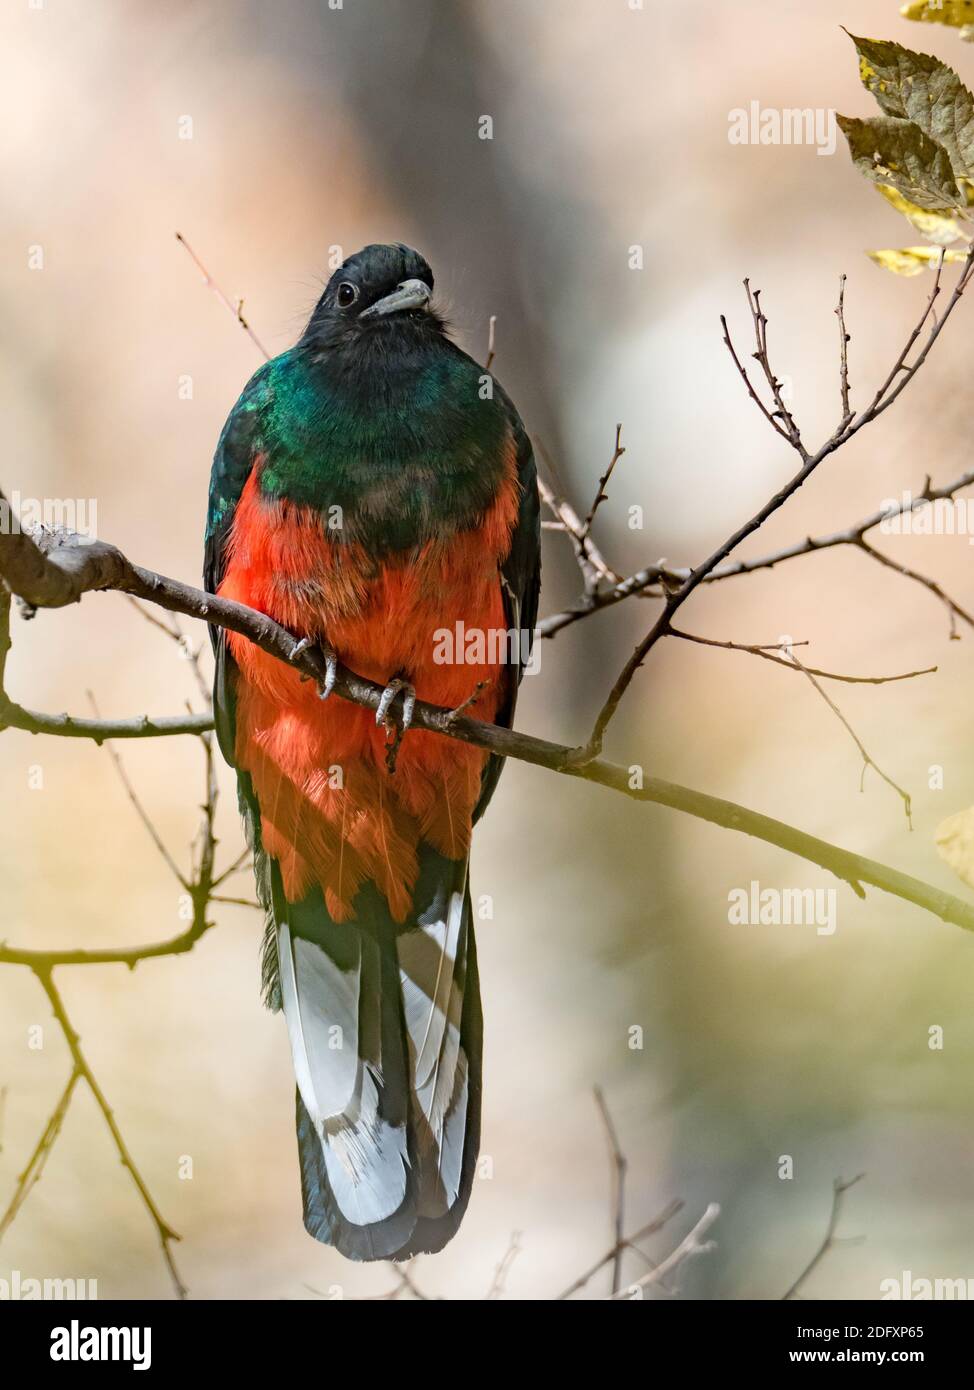 Eared Quetzal, Euptilotis neoxenus, ein schöner Trogonvogel, der in den USA selten ist und eine Mega-Rarität für Vogelbeobachter ist Stockfoto